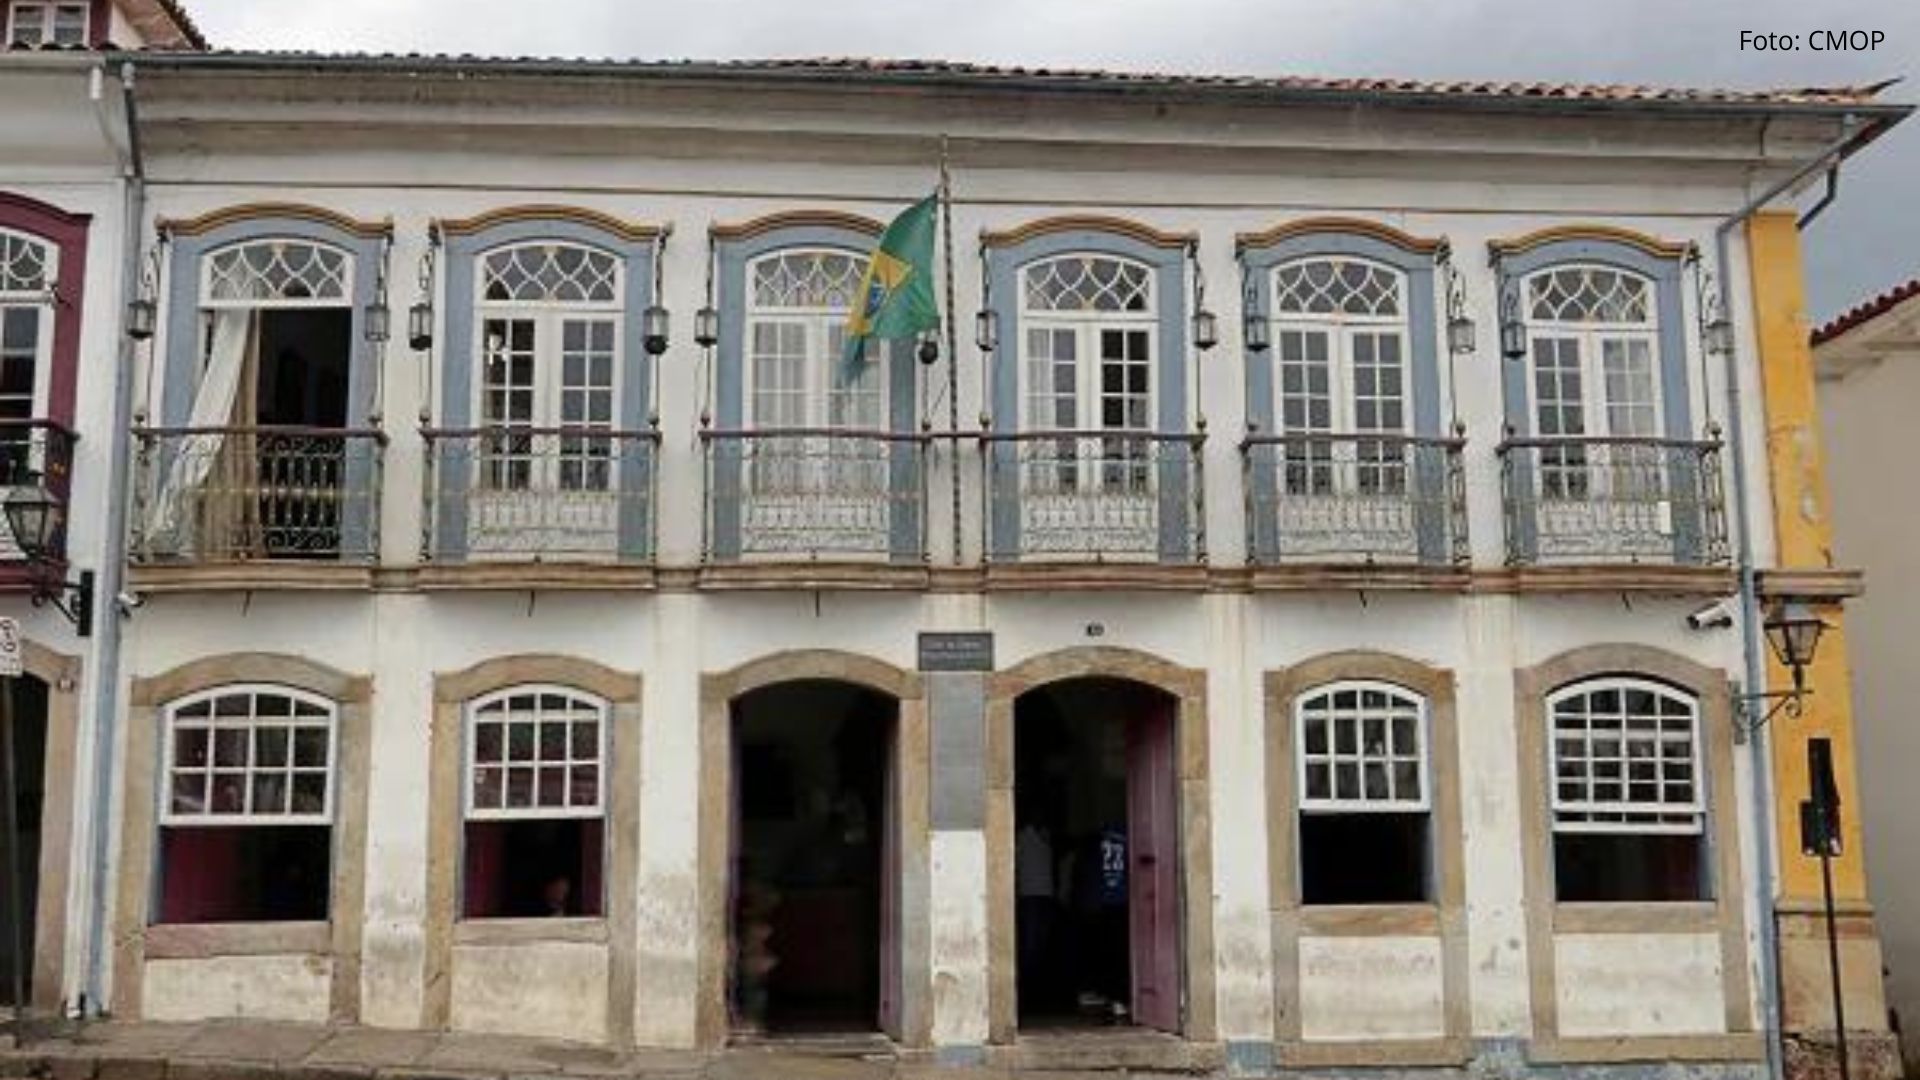 Quatro vereadores se candidatam à presidência da Câmara de Ouro Preto; veja nomes